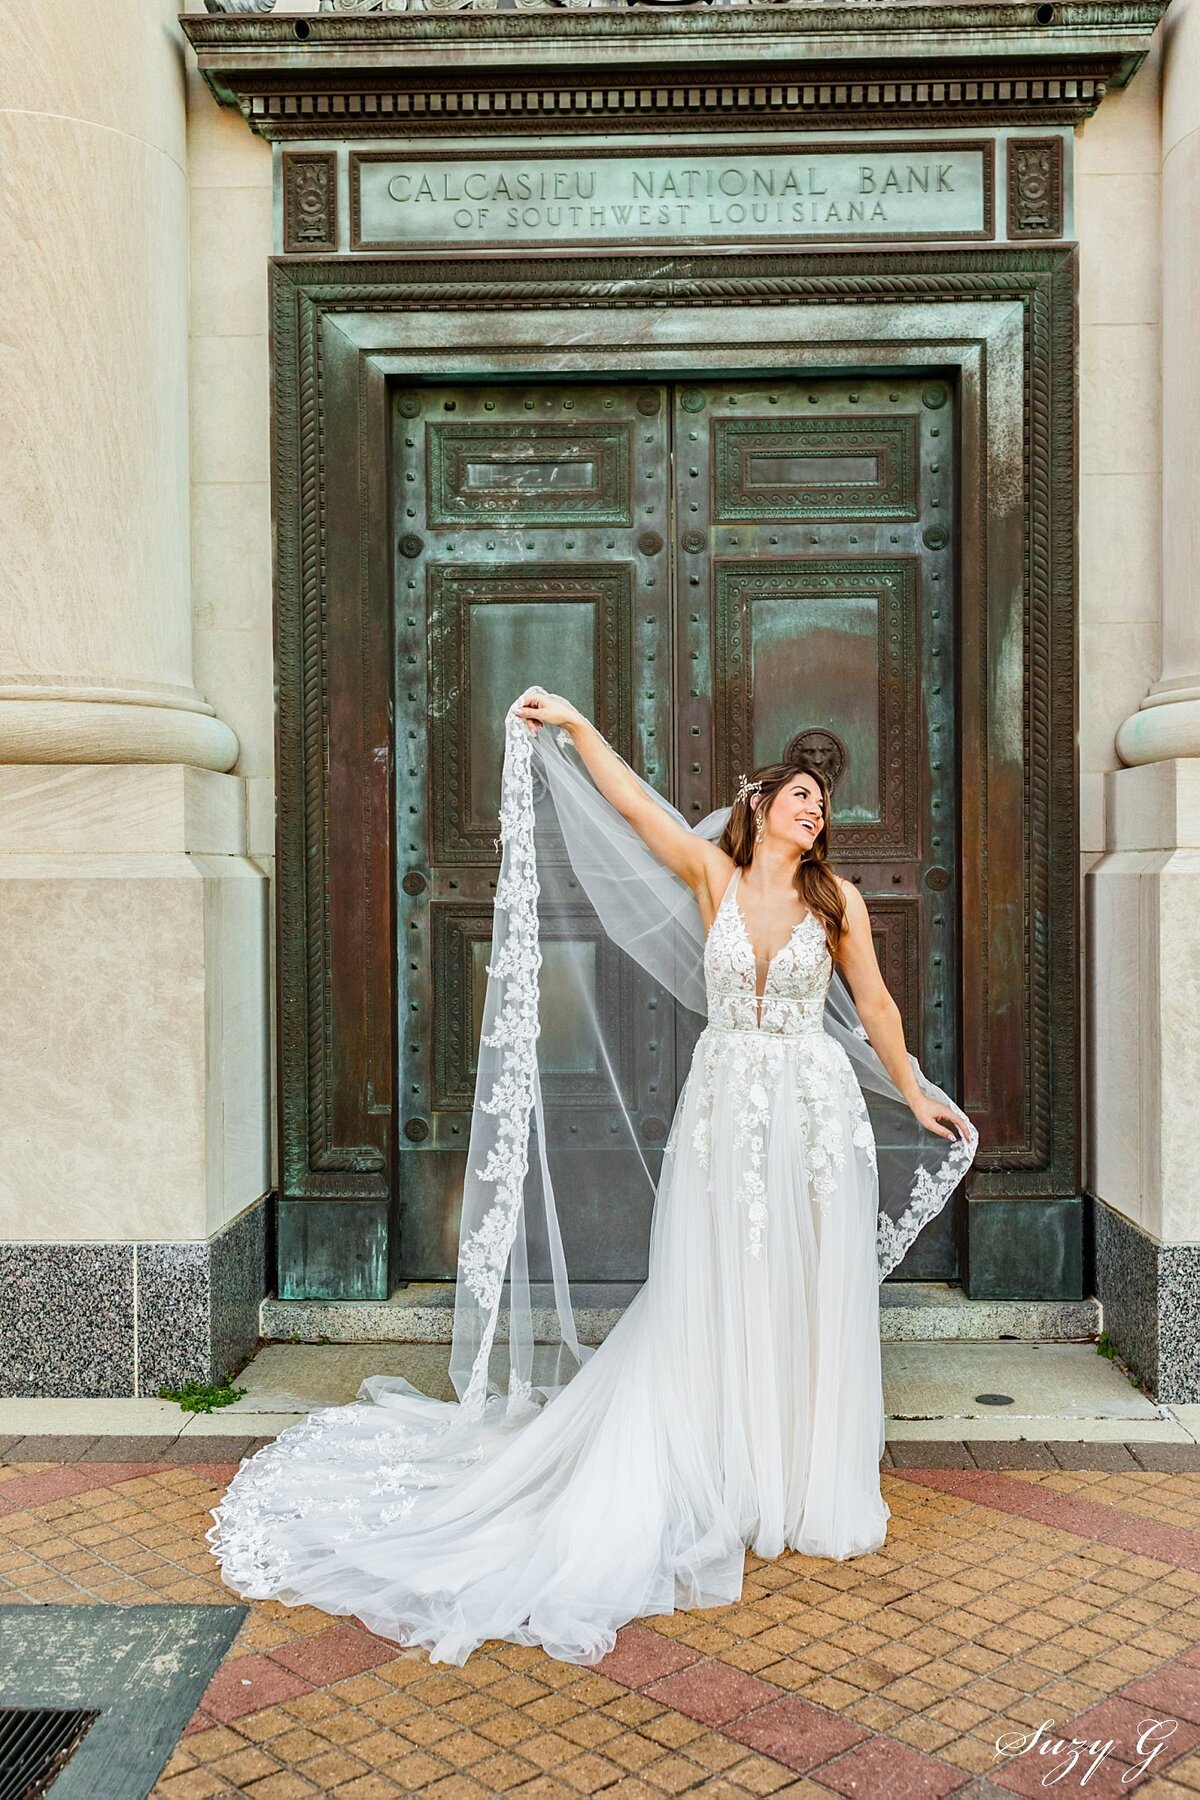 Suzy G Bride – Bridal Photography – Louisiana Wedding Photography – Lake Charles Wedding Photography_0004